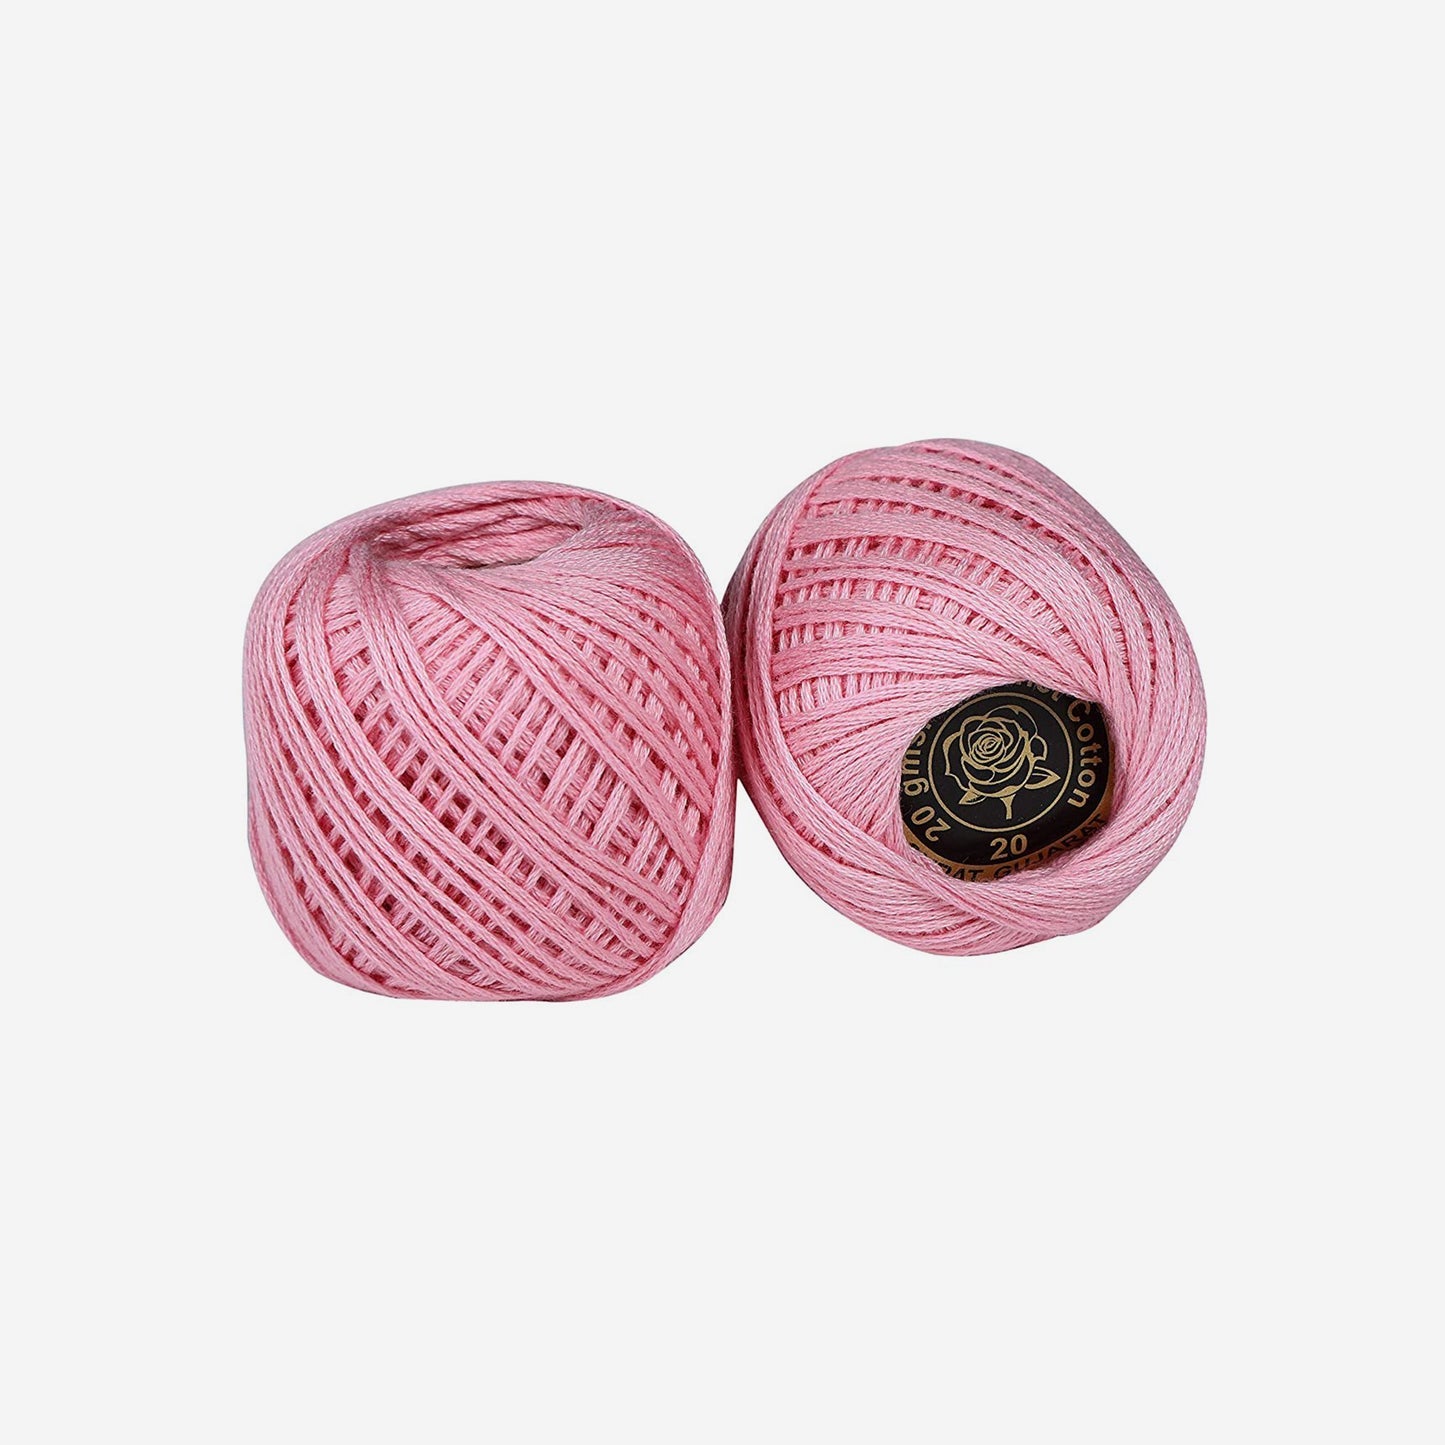 Hand-crochet hoops (Variation 4)